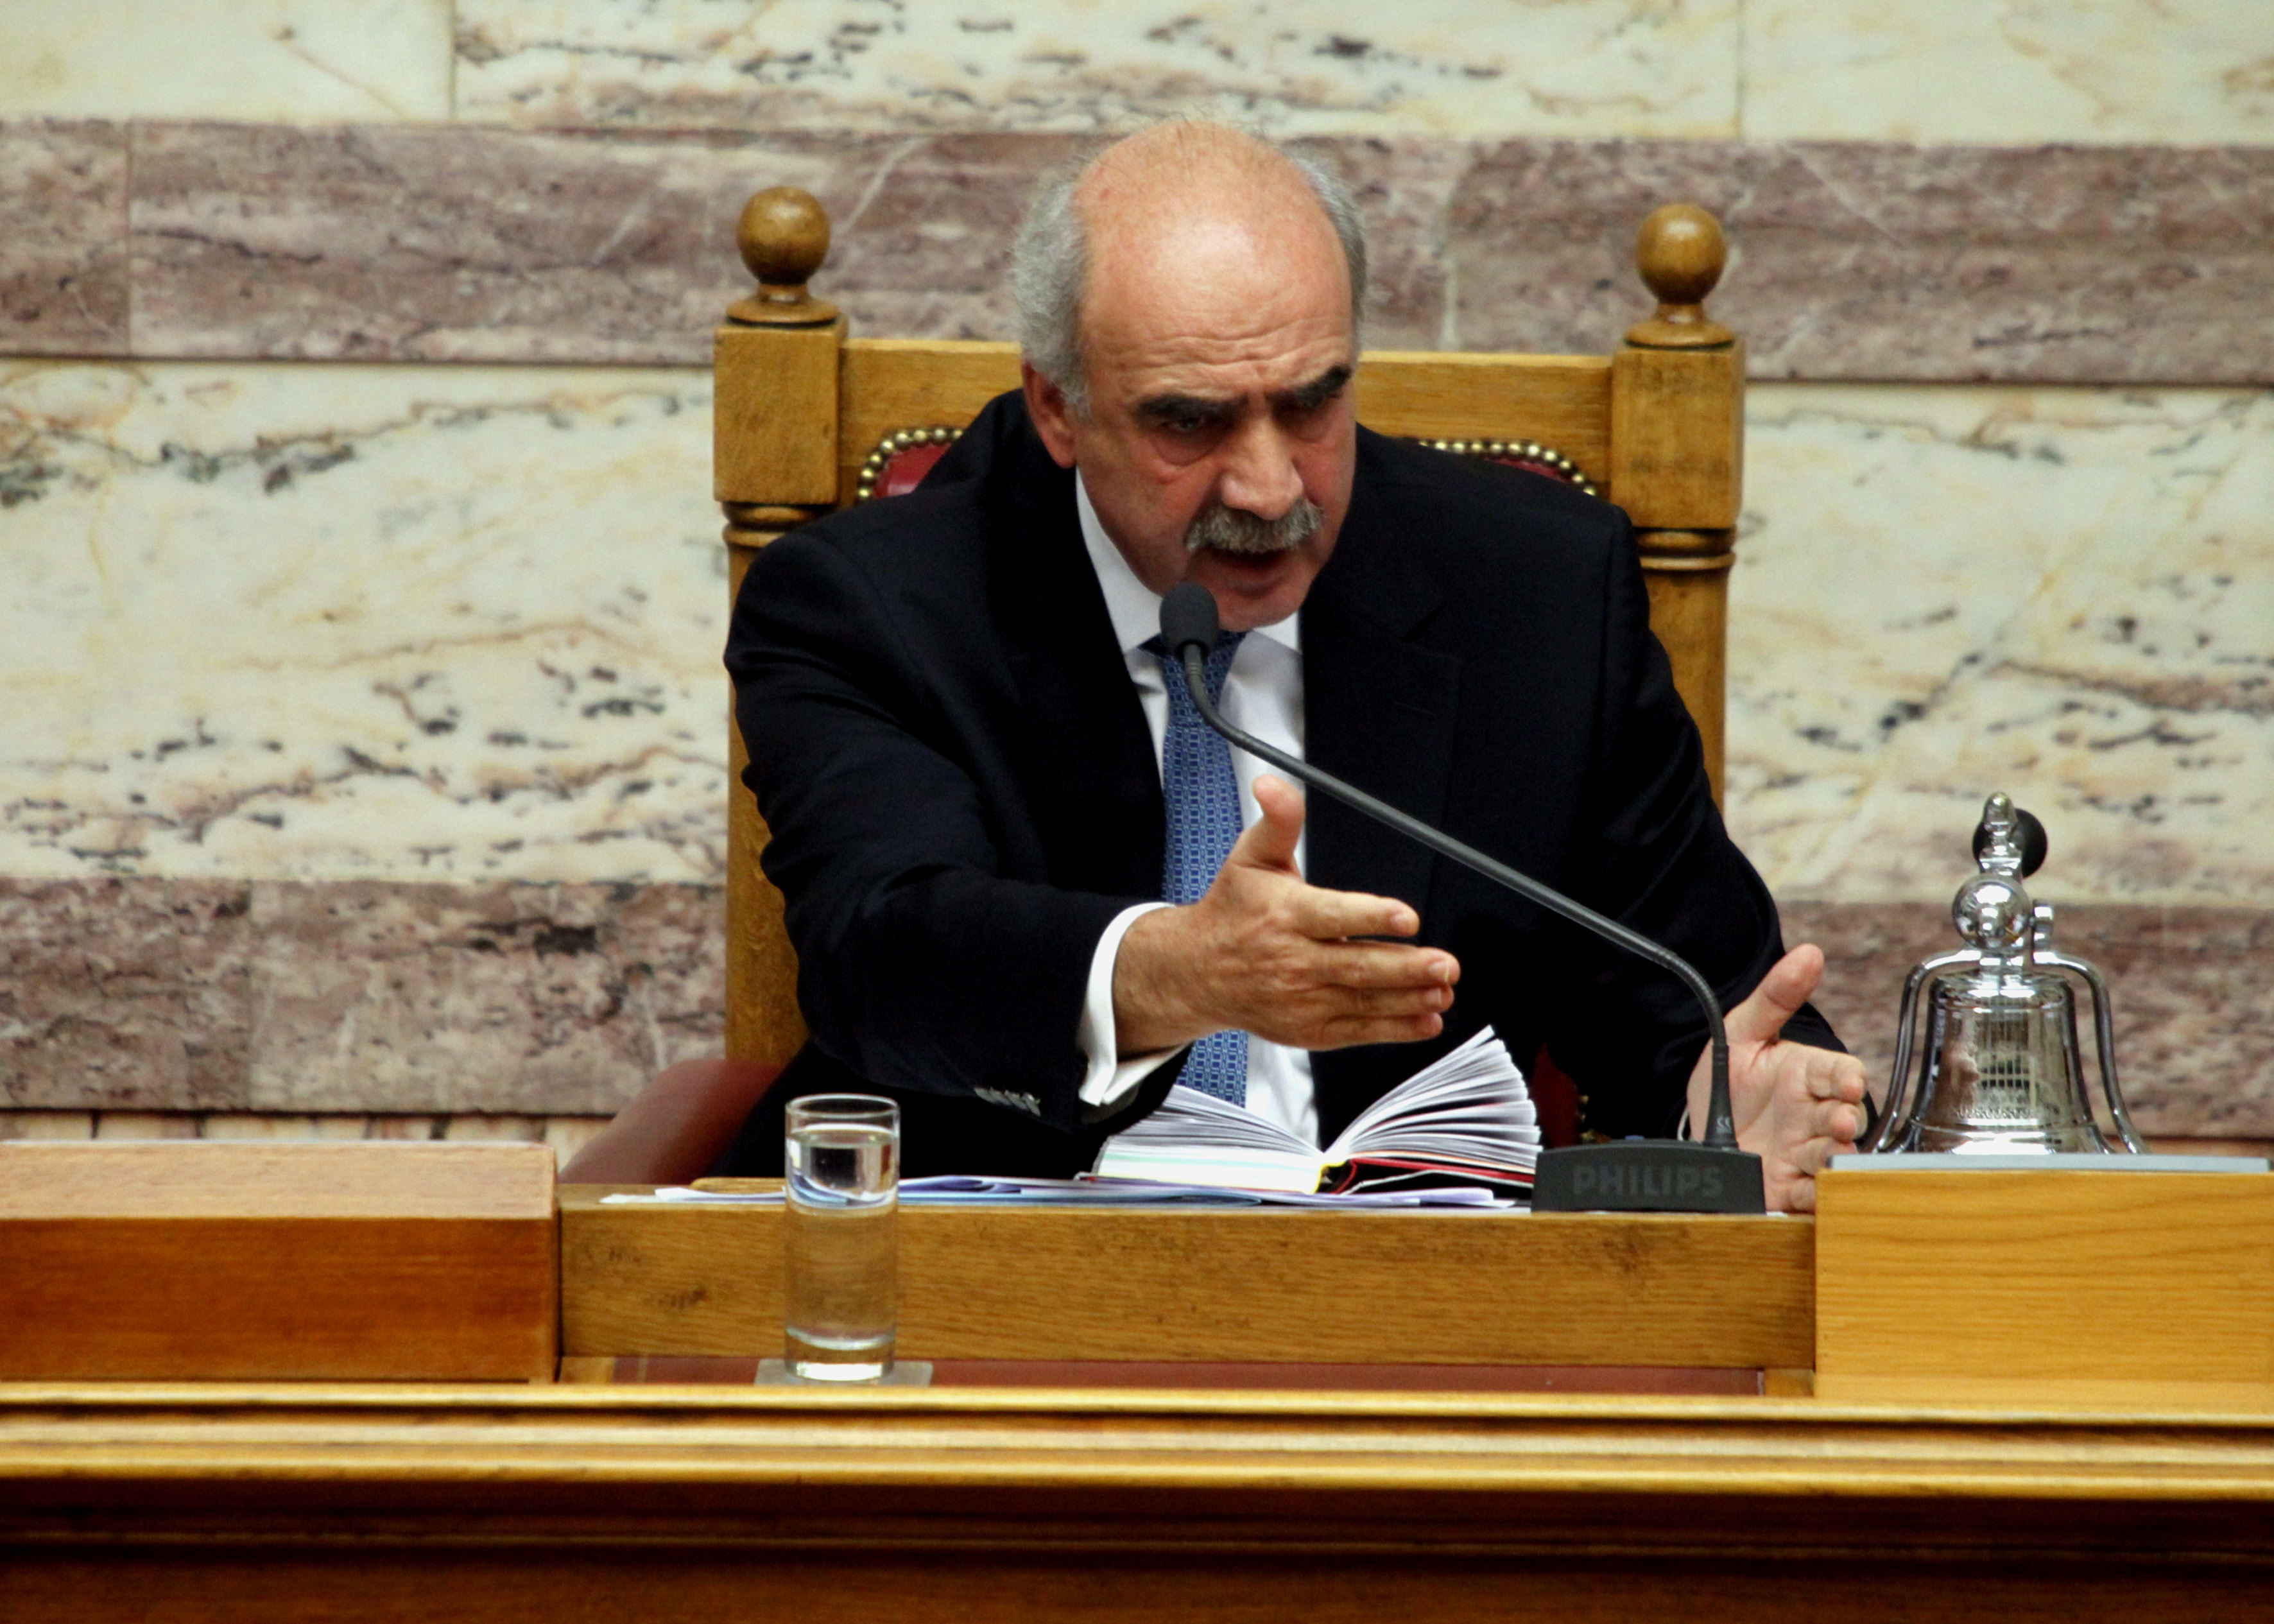 Μεϊμαράκης: Δεν μπορούμε να μειώσουμε τις βουλευτικές αποζημιώσεις